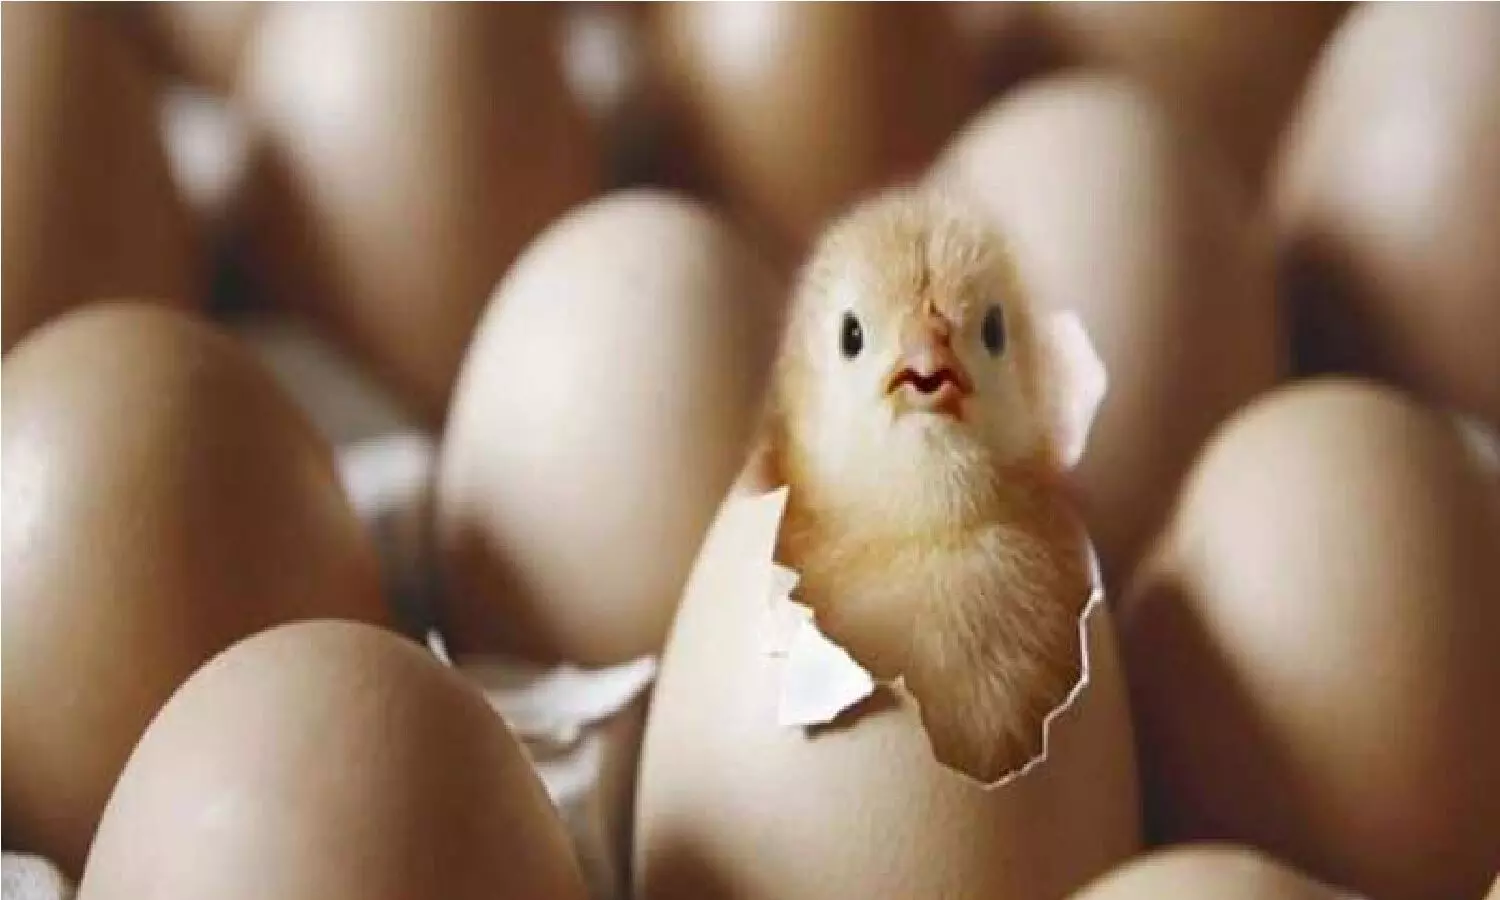 सवाल: जब पूरा अंडा बंद रहता है तो चूजे को ऑक्सीजन कहां से मिलती है?